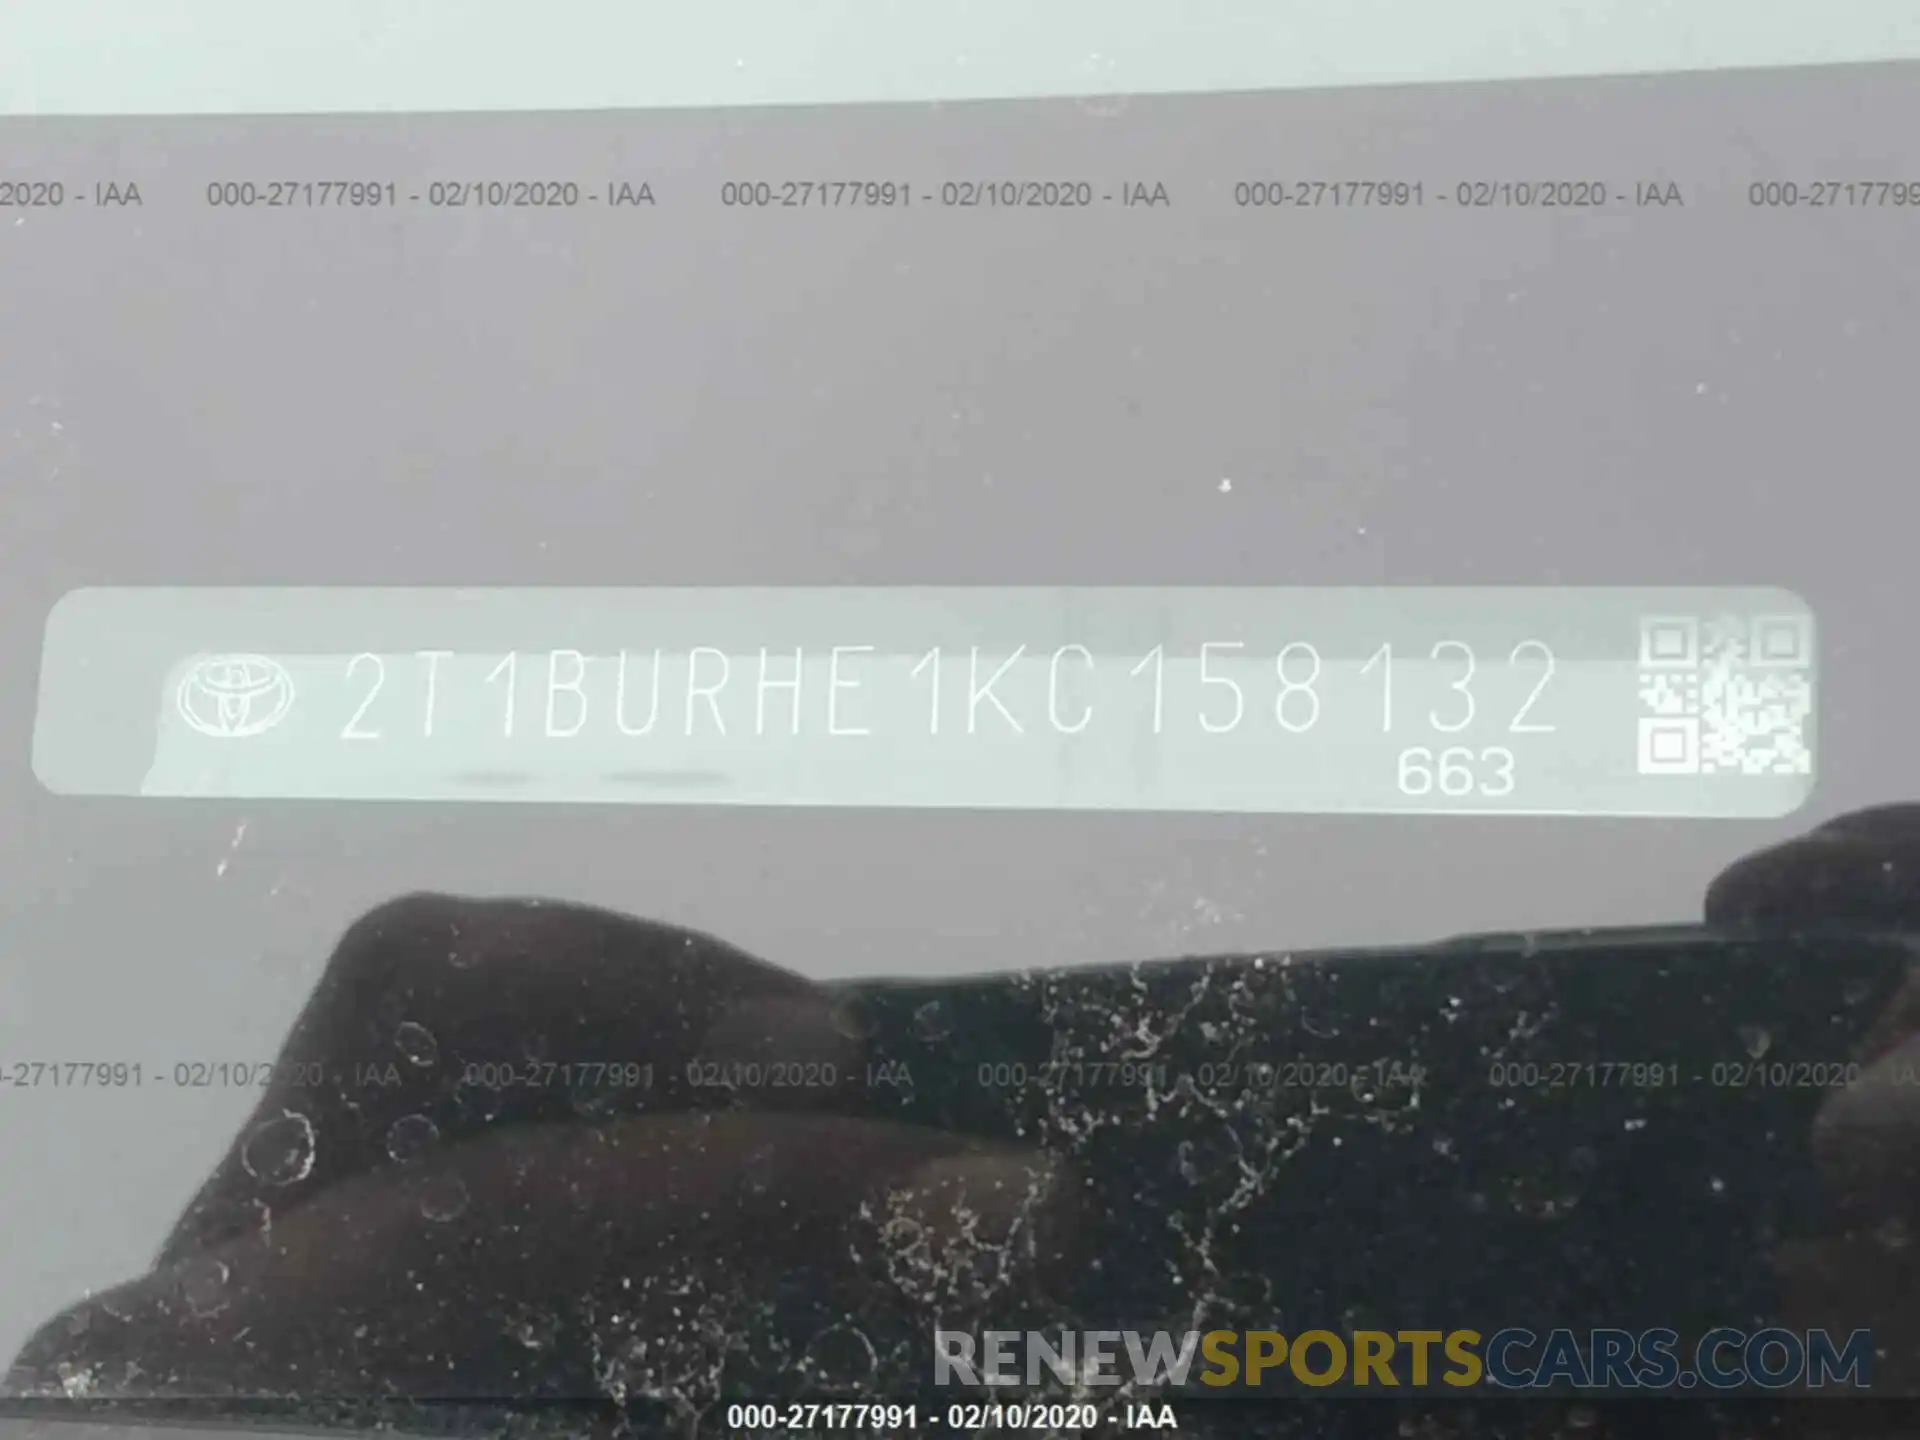 9 Photograph of a damaged car 2T1BURHE1KC158132 TOYOTA COROLLA 2019